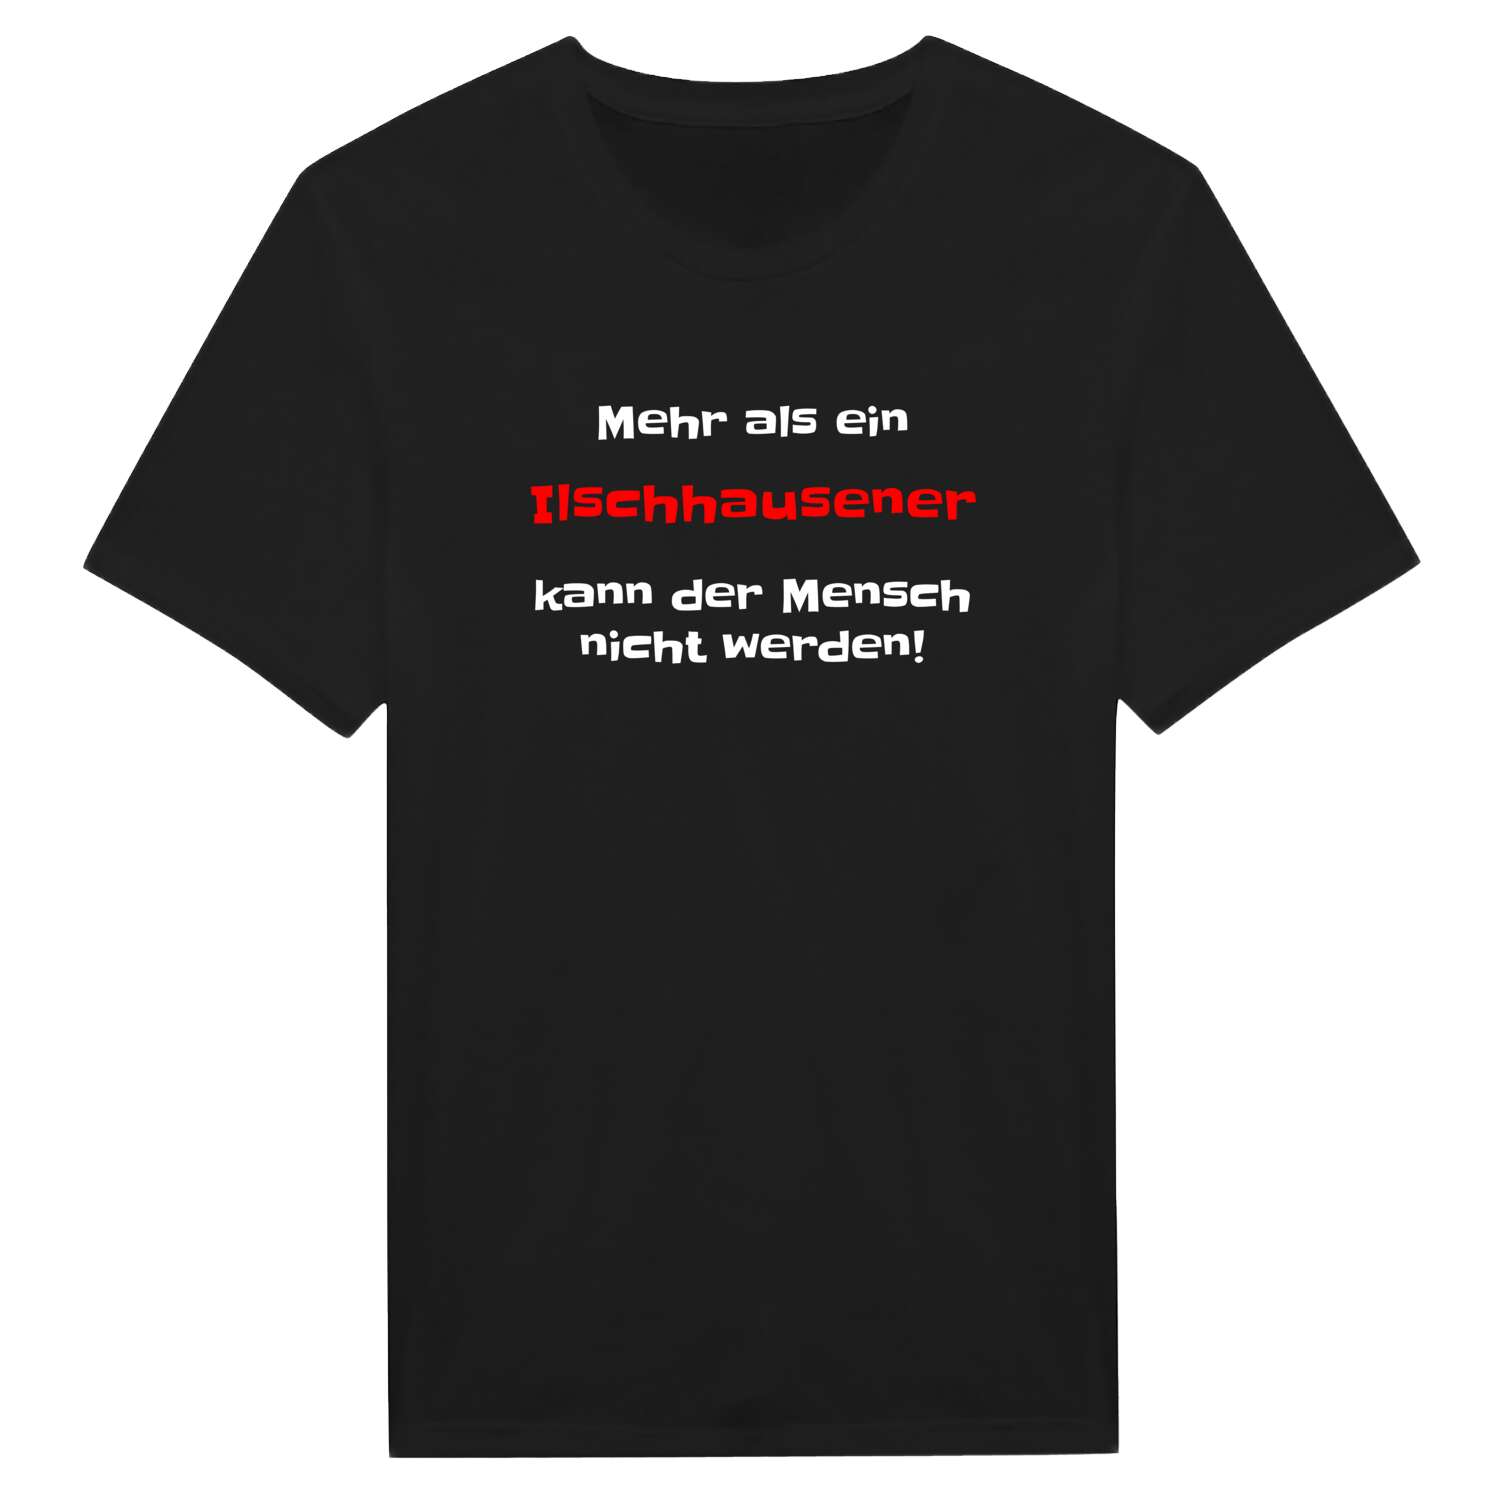 Ilschhausen T-Shirt »Mehr als ein«